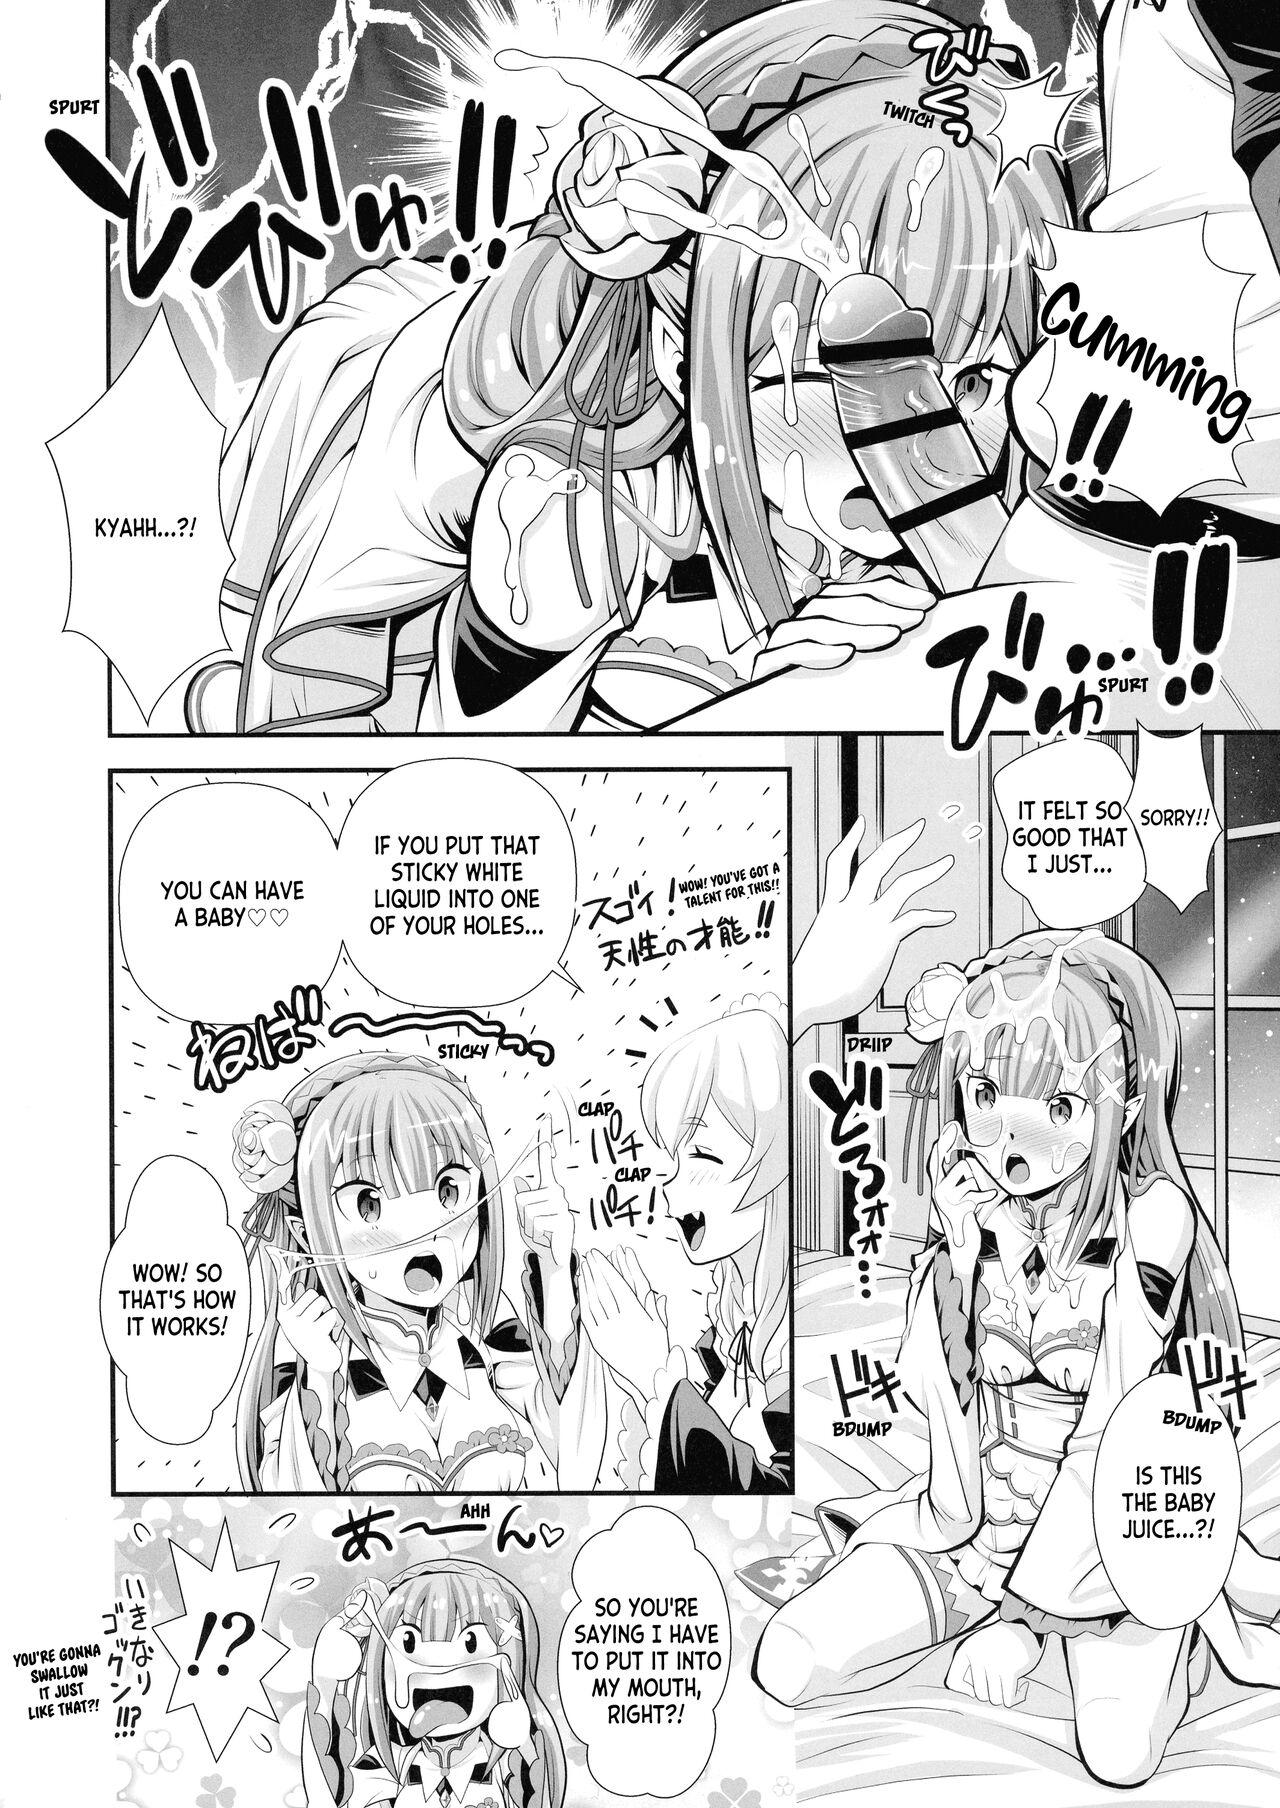 Cumming Re: Zero na Maid-san vol. 3 - Re zero kara hajimeru isekai seikatsu Ecchi - Page 10